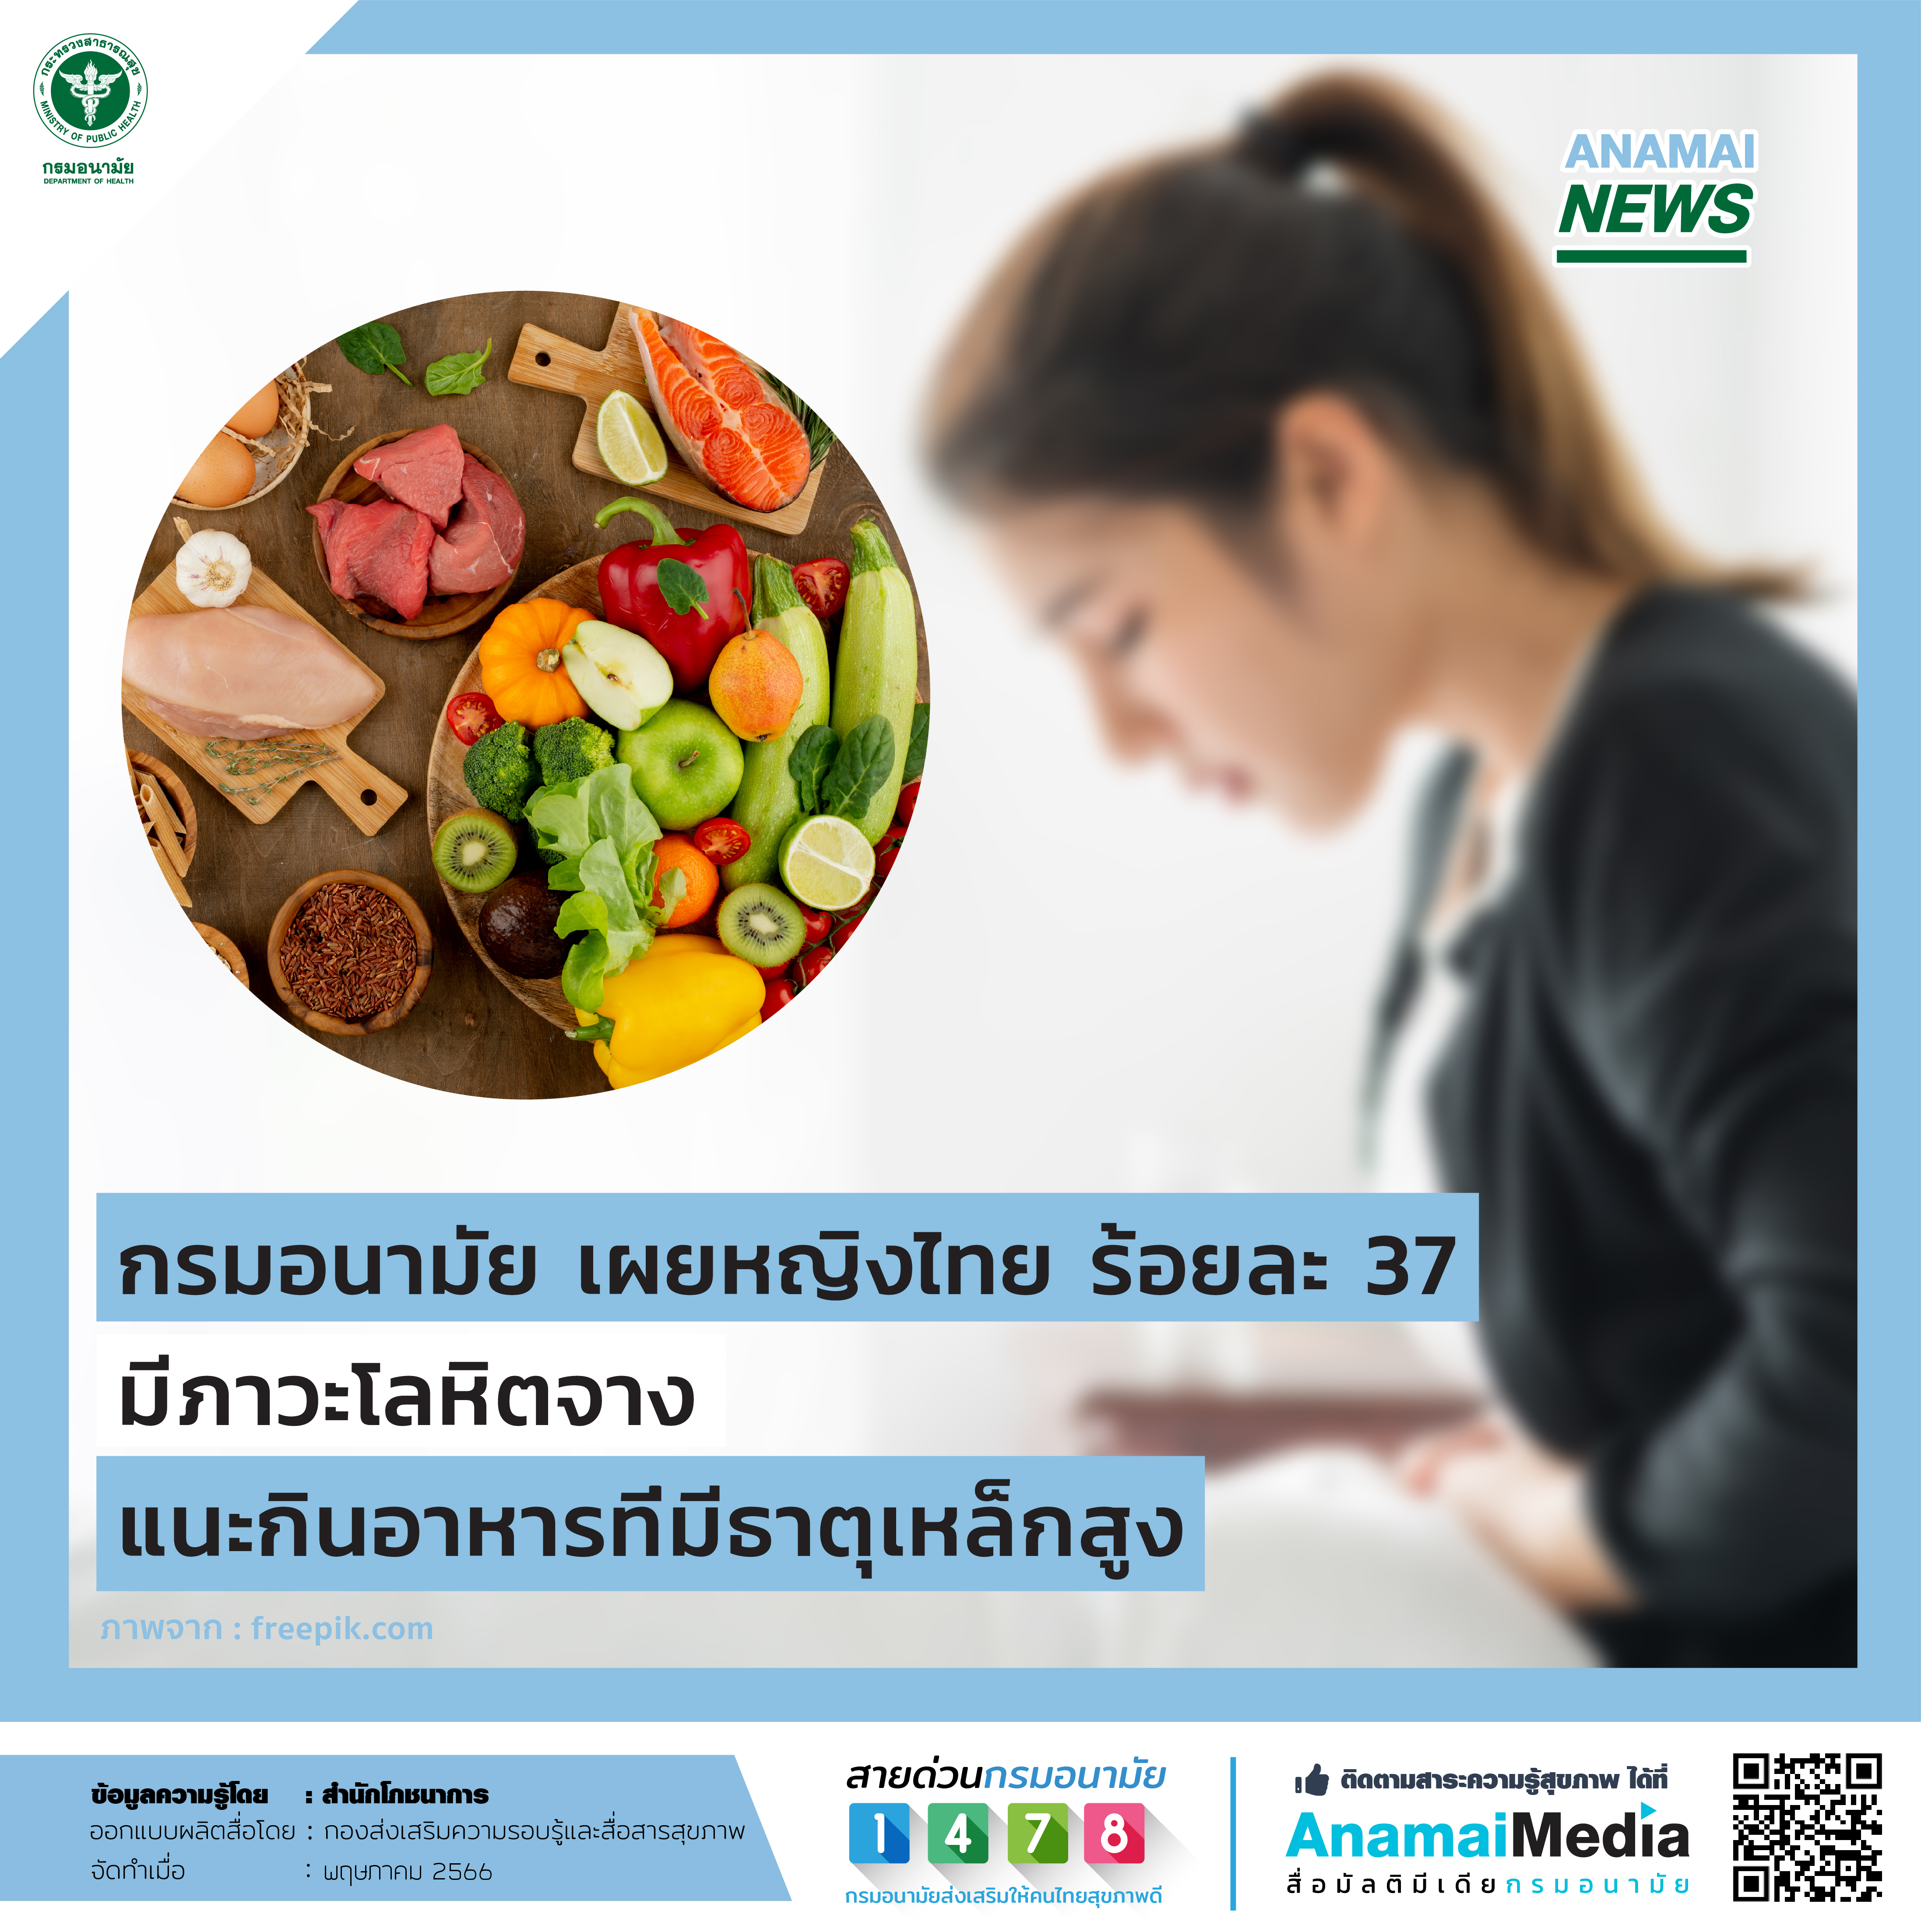 กรมอนามัย เผยหญิงไทย ร้อยละ 37 มีภาวะโลหิตจาง แนะกินอาหารที่มีธาตุเหล็กสูง 